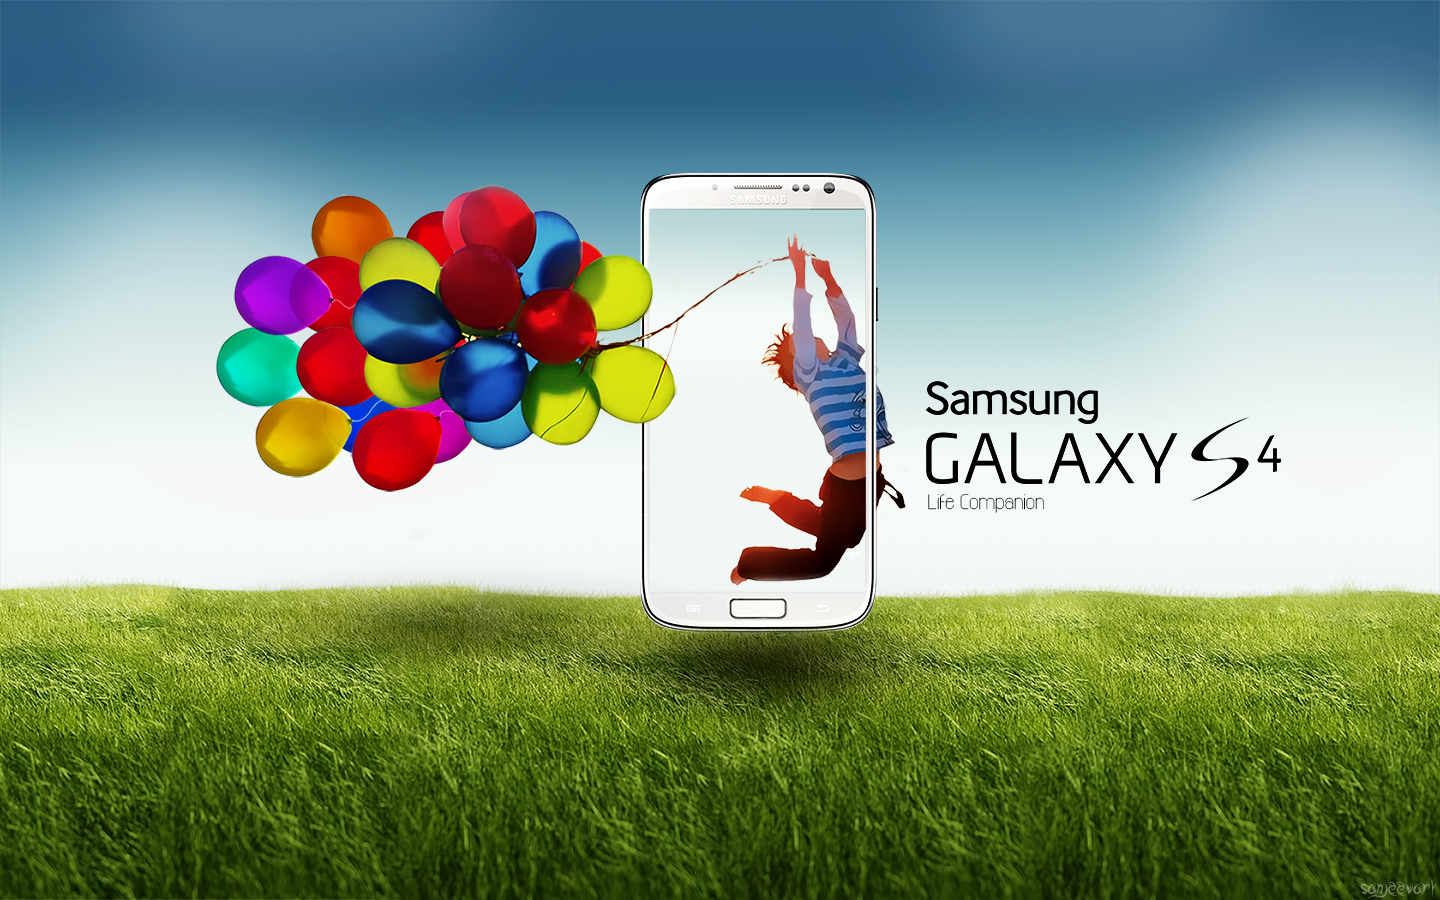 Hình nền Samsung Galaxy S4 làm cho điện thoại của bạn trở nên đẹp hơn bao giờ hết! Với tùy chọn đa dạng, bạn có thể lựa chọn hình nền yêu thích của mình và tạo nên một thế giới điện thoại đầy màu sắc và phong cách. Hãy khám phá ngay!